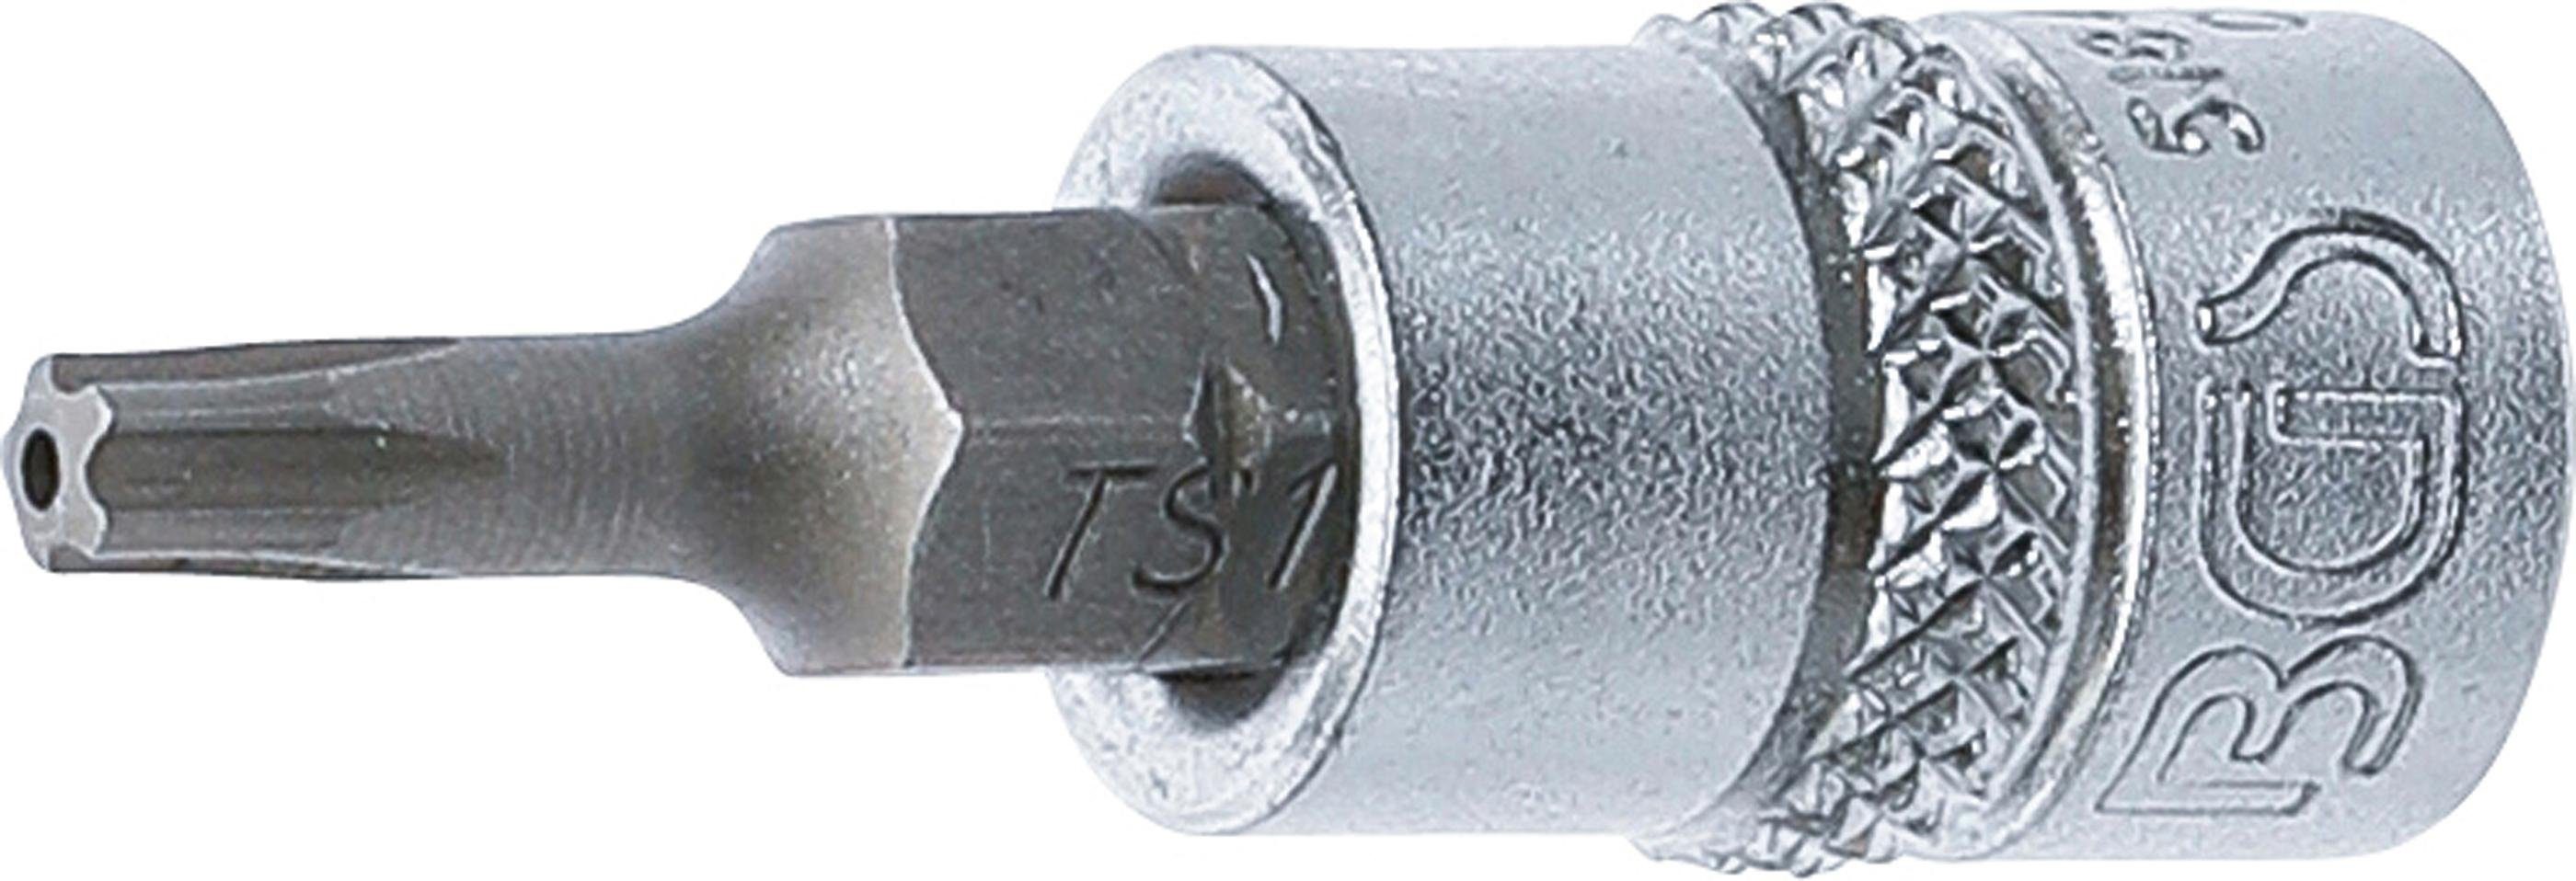 BGS technic Bit-Schraubendreher Bit-Einsatz, Antrieb Innenvierkant 6,3 mm (1/4), TS-Profil (für Torx Plus) mit Bohrung TS15